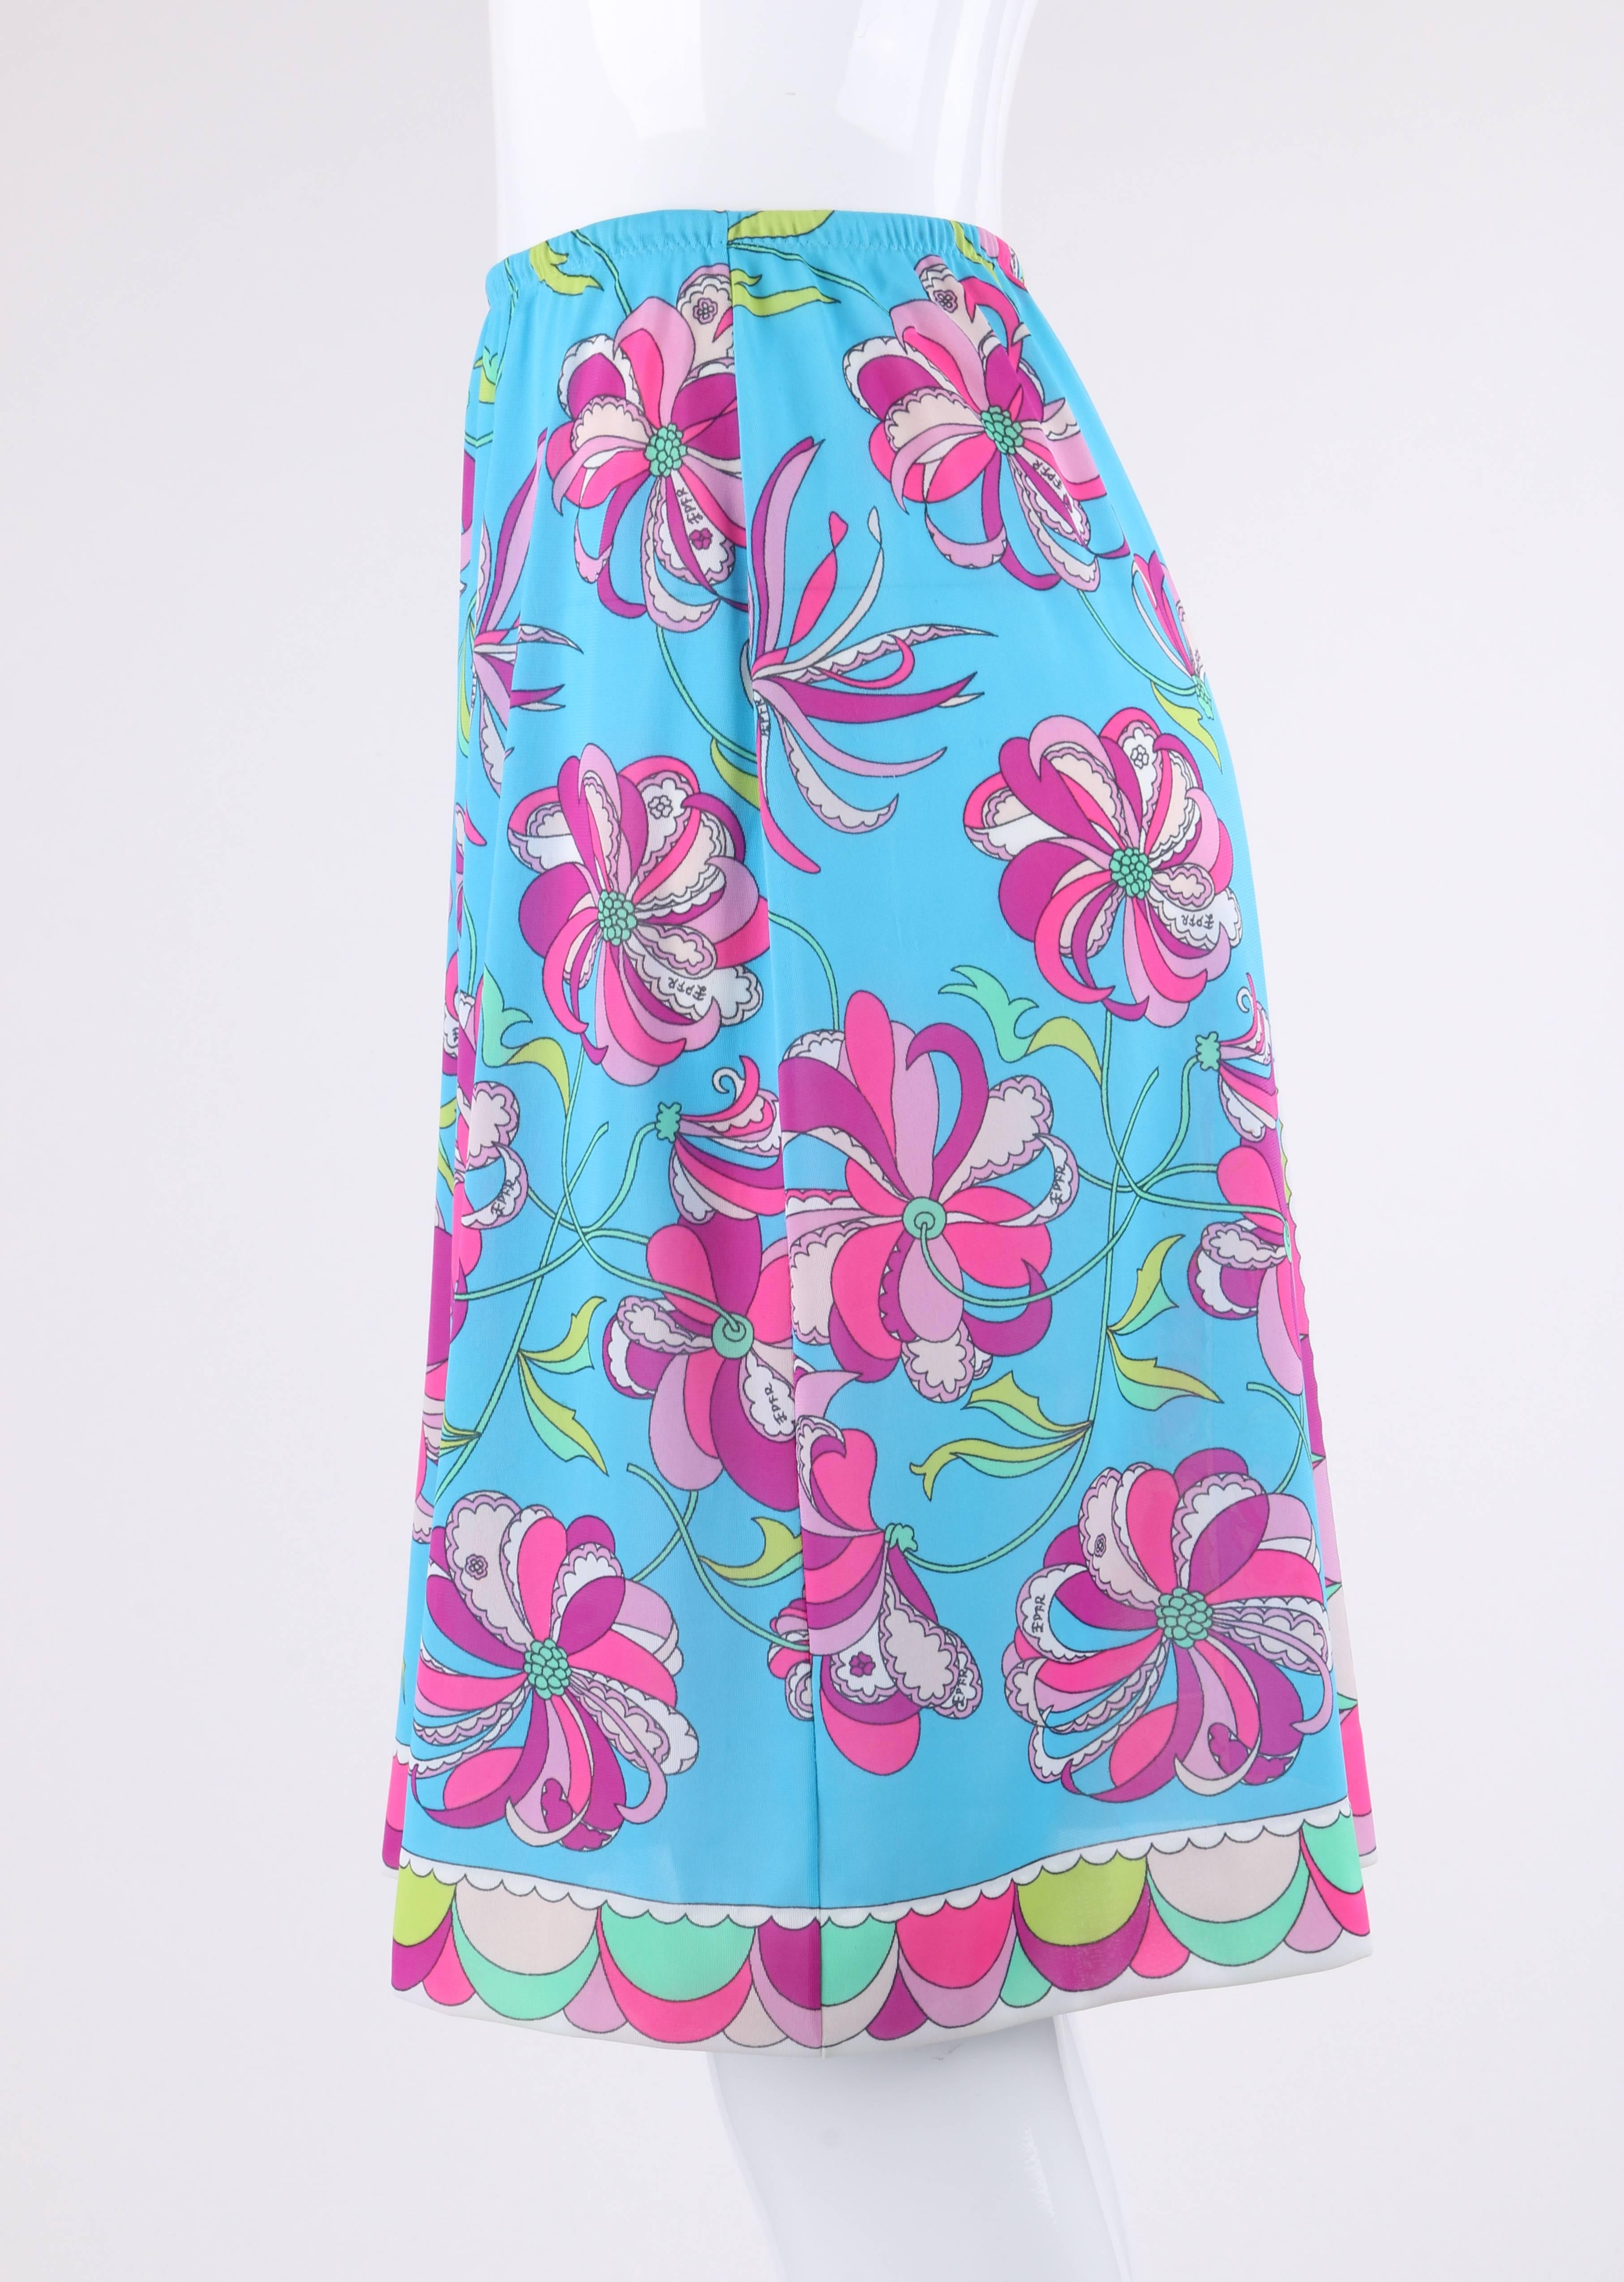 Women's Aline Windowpane Skirt Size 12-14 Large Glamor & Co 